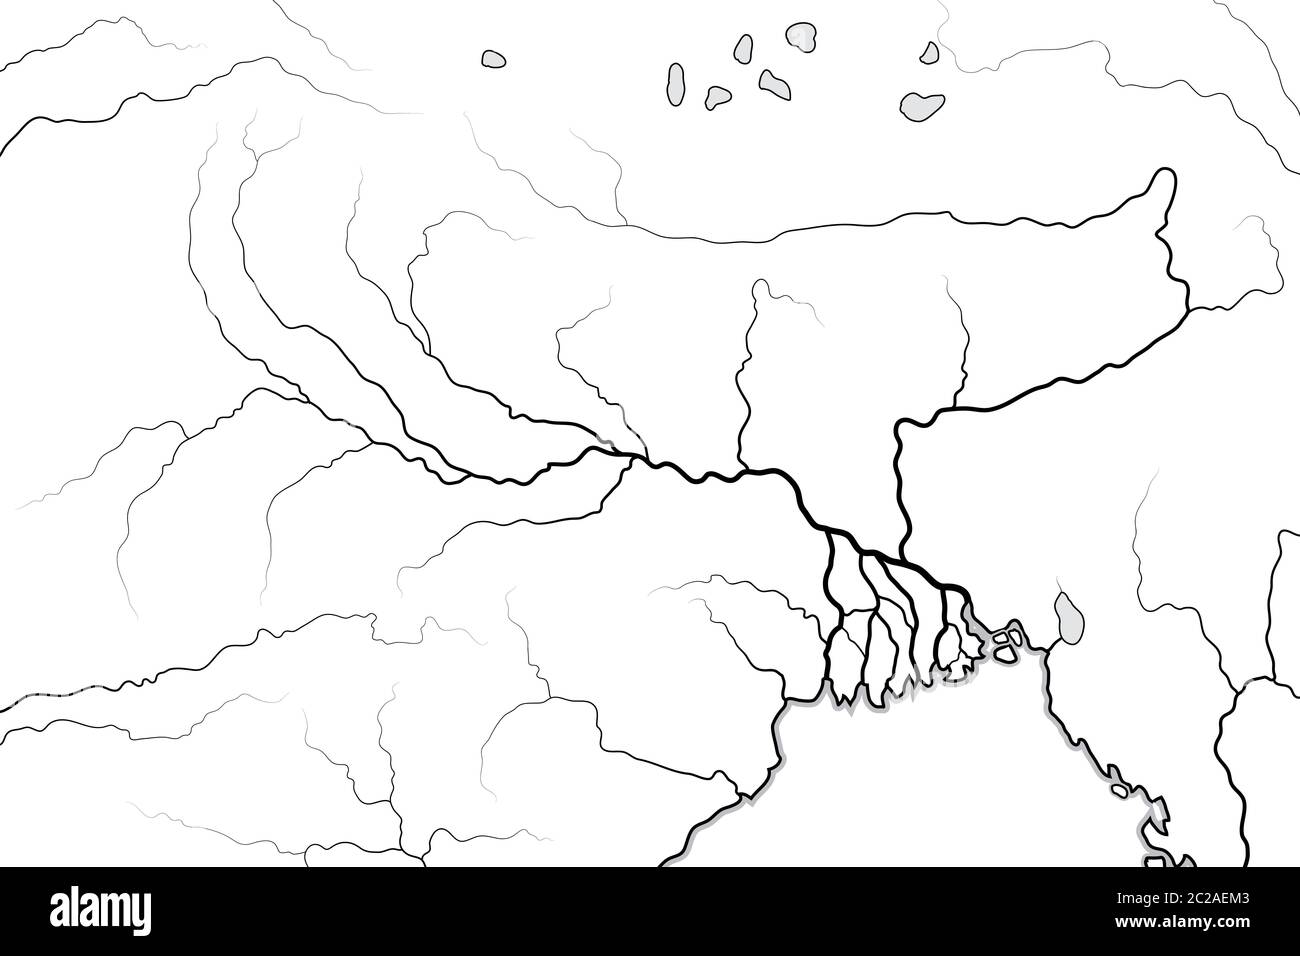 Carte du monde de la vallée et du delta DU GANGE : Inde, Népal, Bengale, Bangladesh. Carte géographique. Banque D'Images